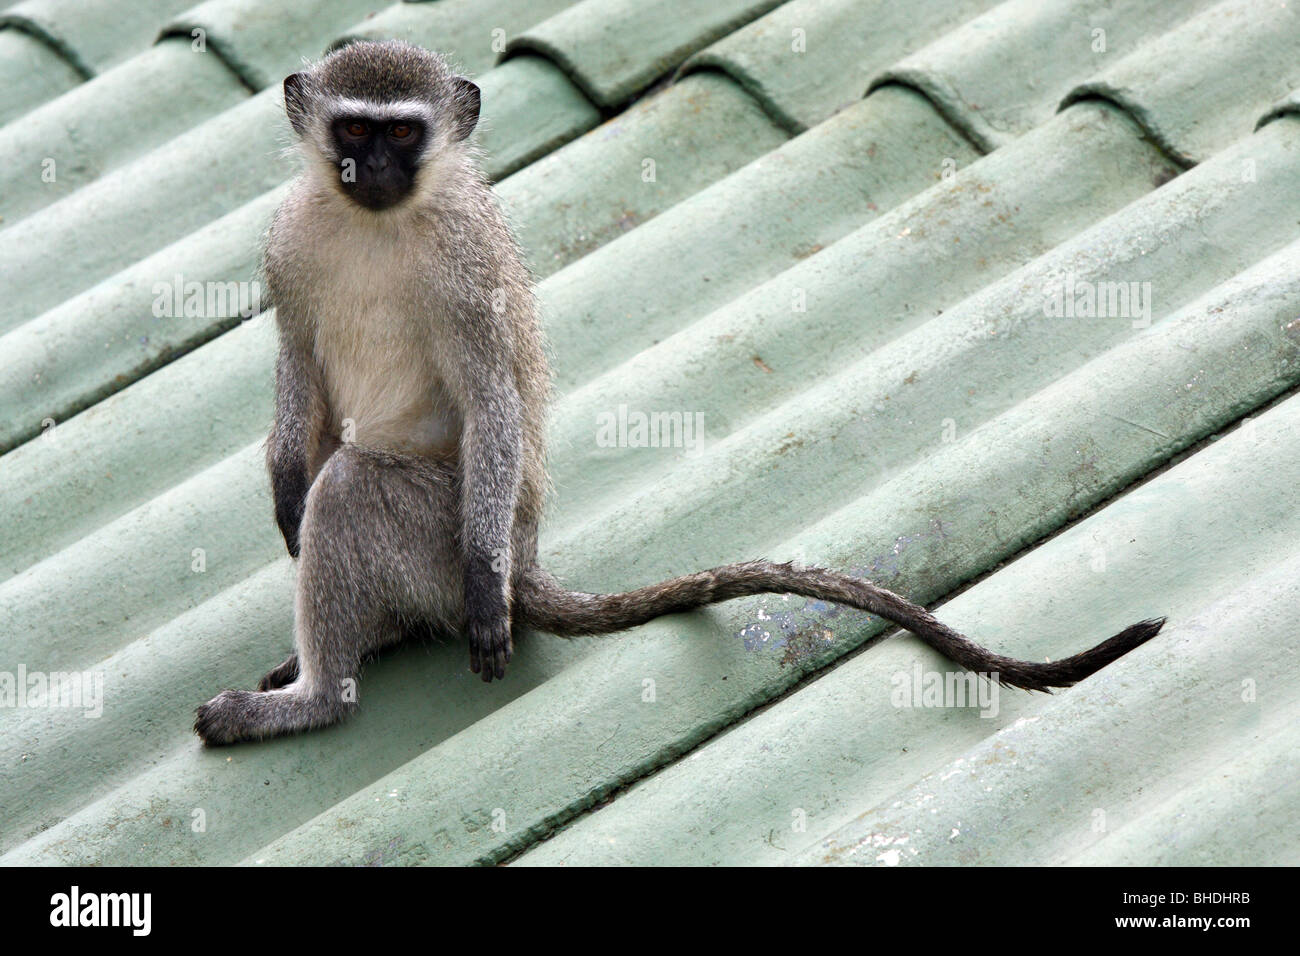 Un singe est assis sur un toit d'une maison Banque D'Images